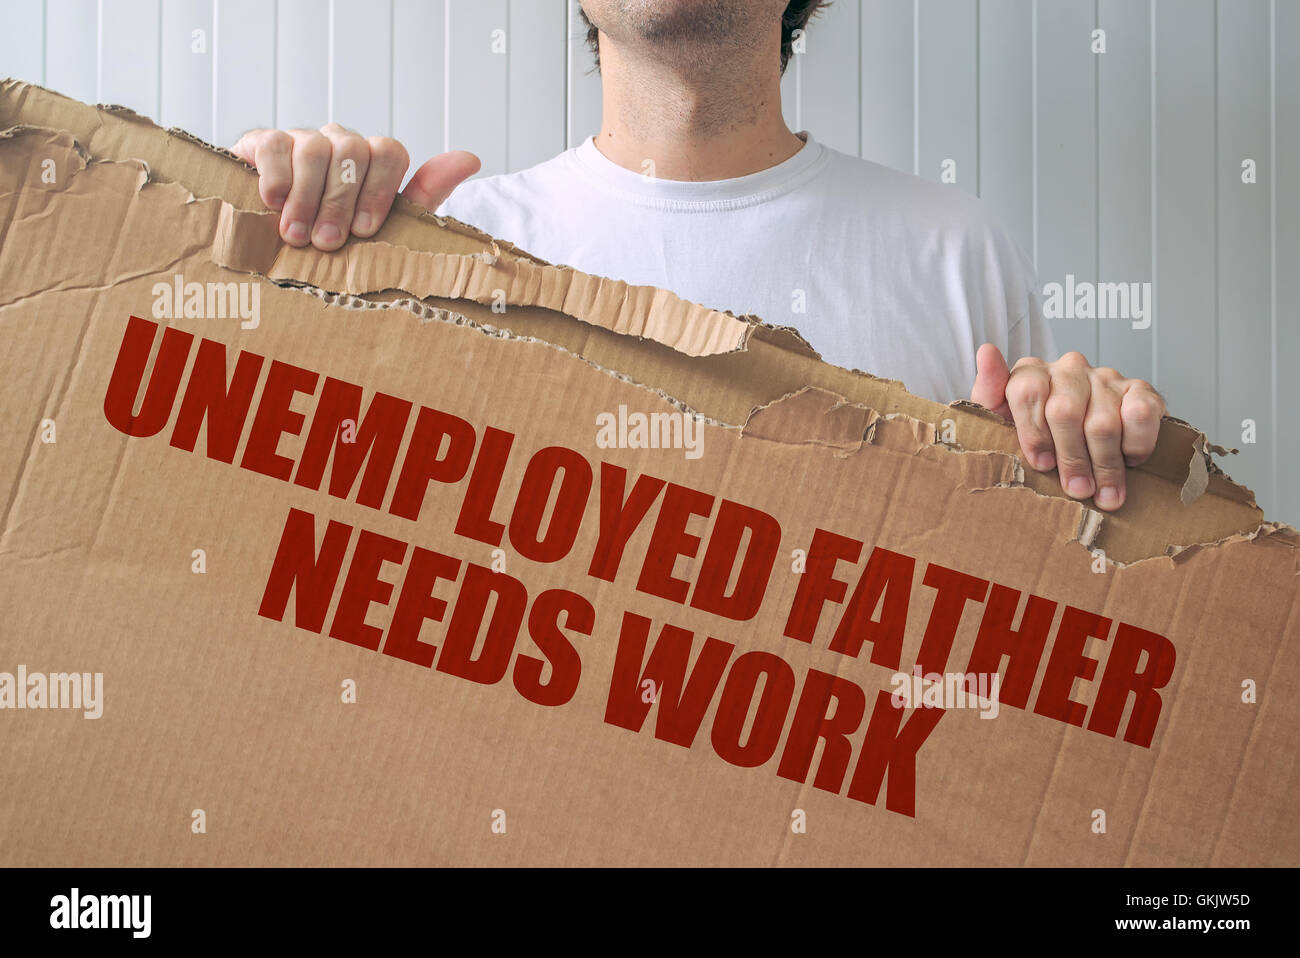 Desempleados padre necesita trabajar, hombre sujetando el banner con la búsqueda de empleo título Foto de stock